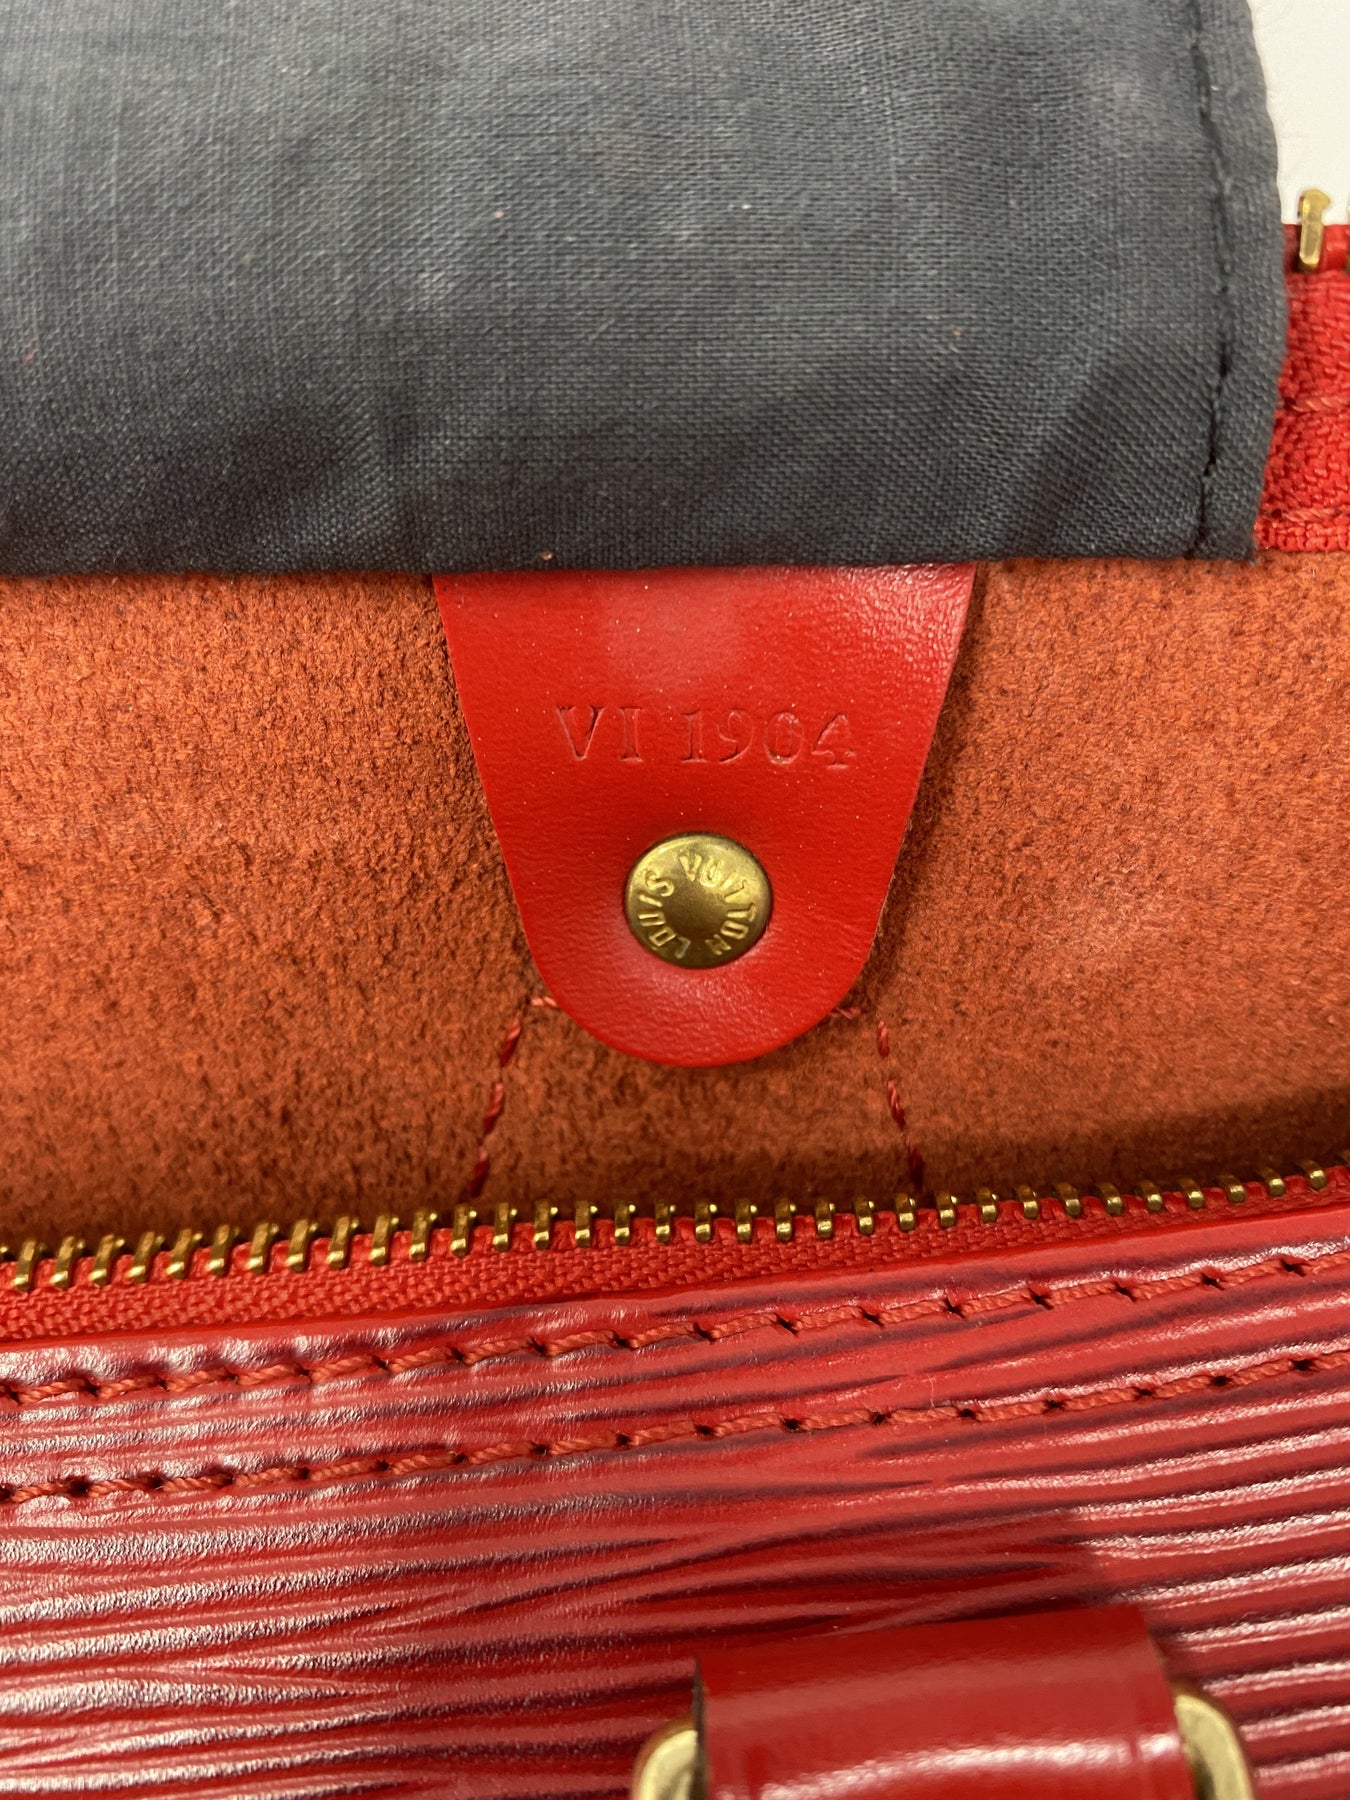 Louis Vuitton, Speedy 40 Epi Leather, signal red texture…